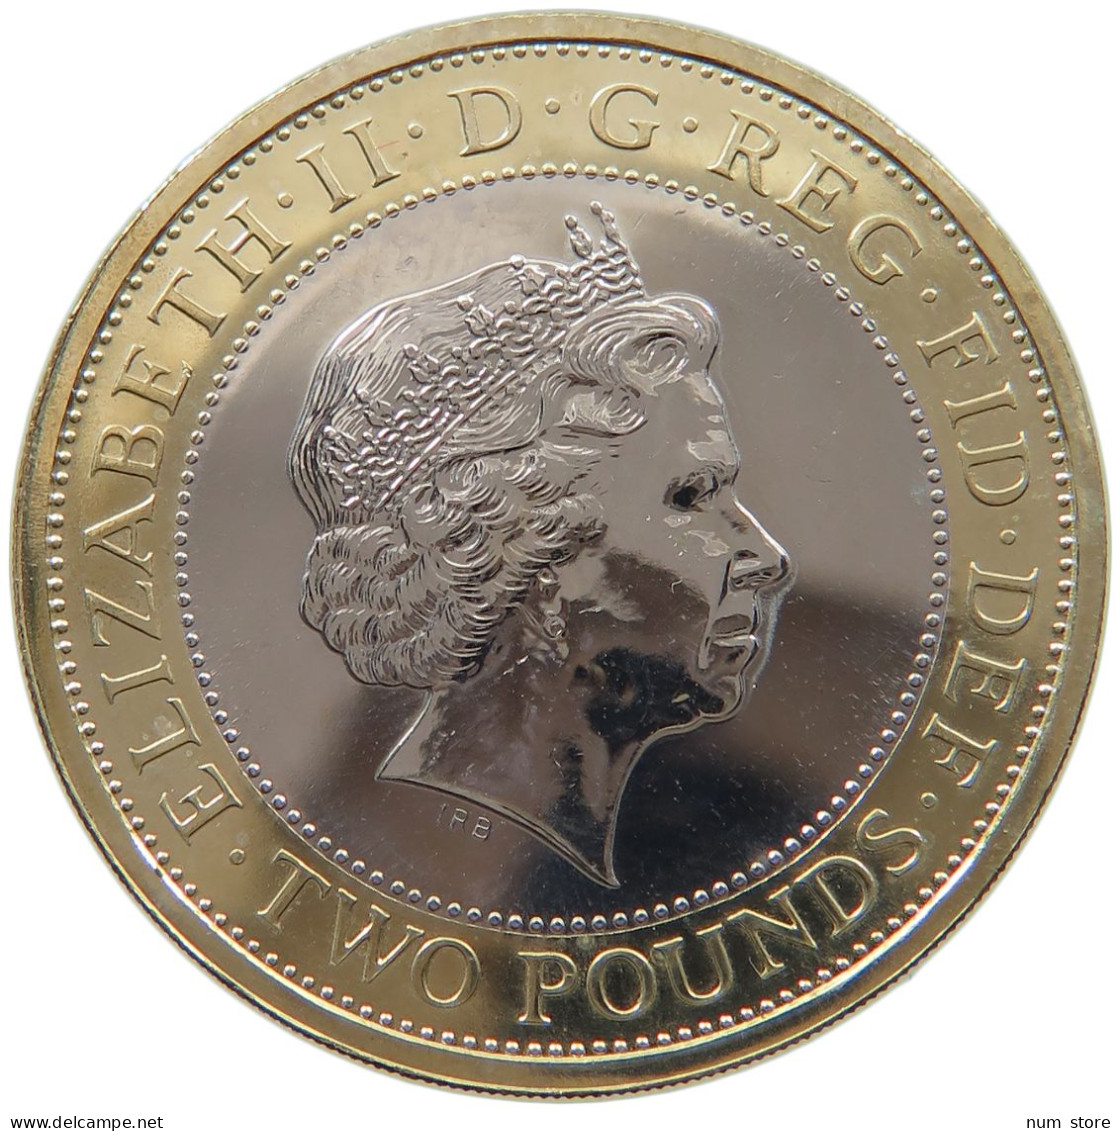 GREAT BRITAIN 2 POUNDS 2012 Elisabeth II. (1952-) LONDON BEIJING #c053 0307 - 2 Pounds